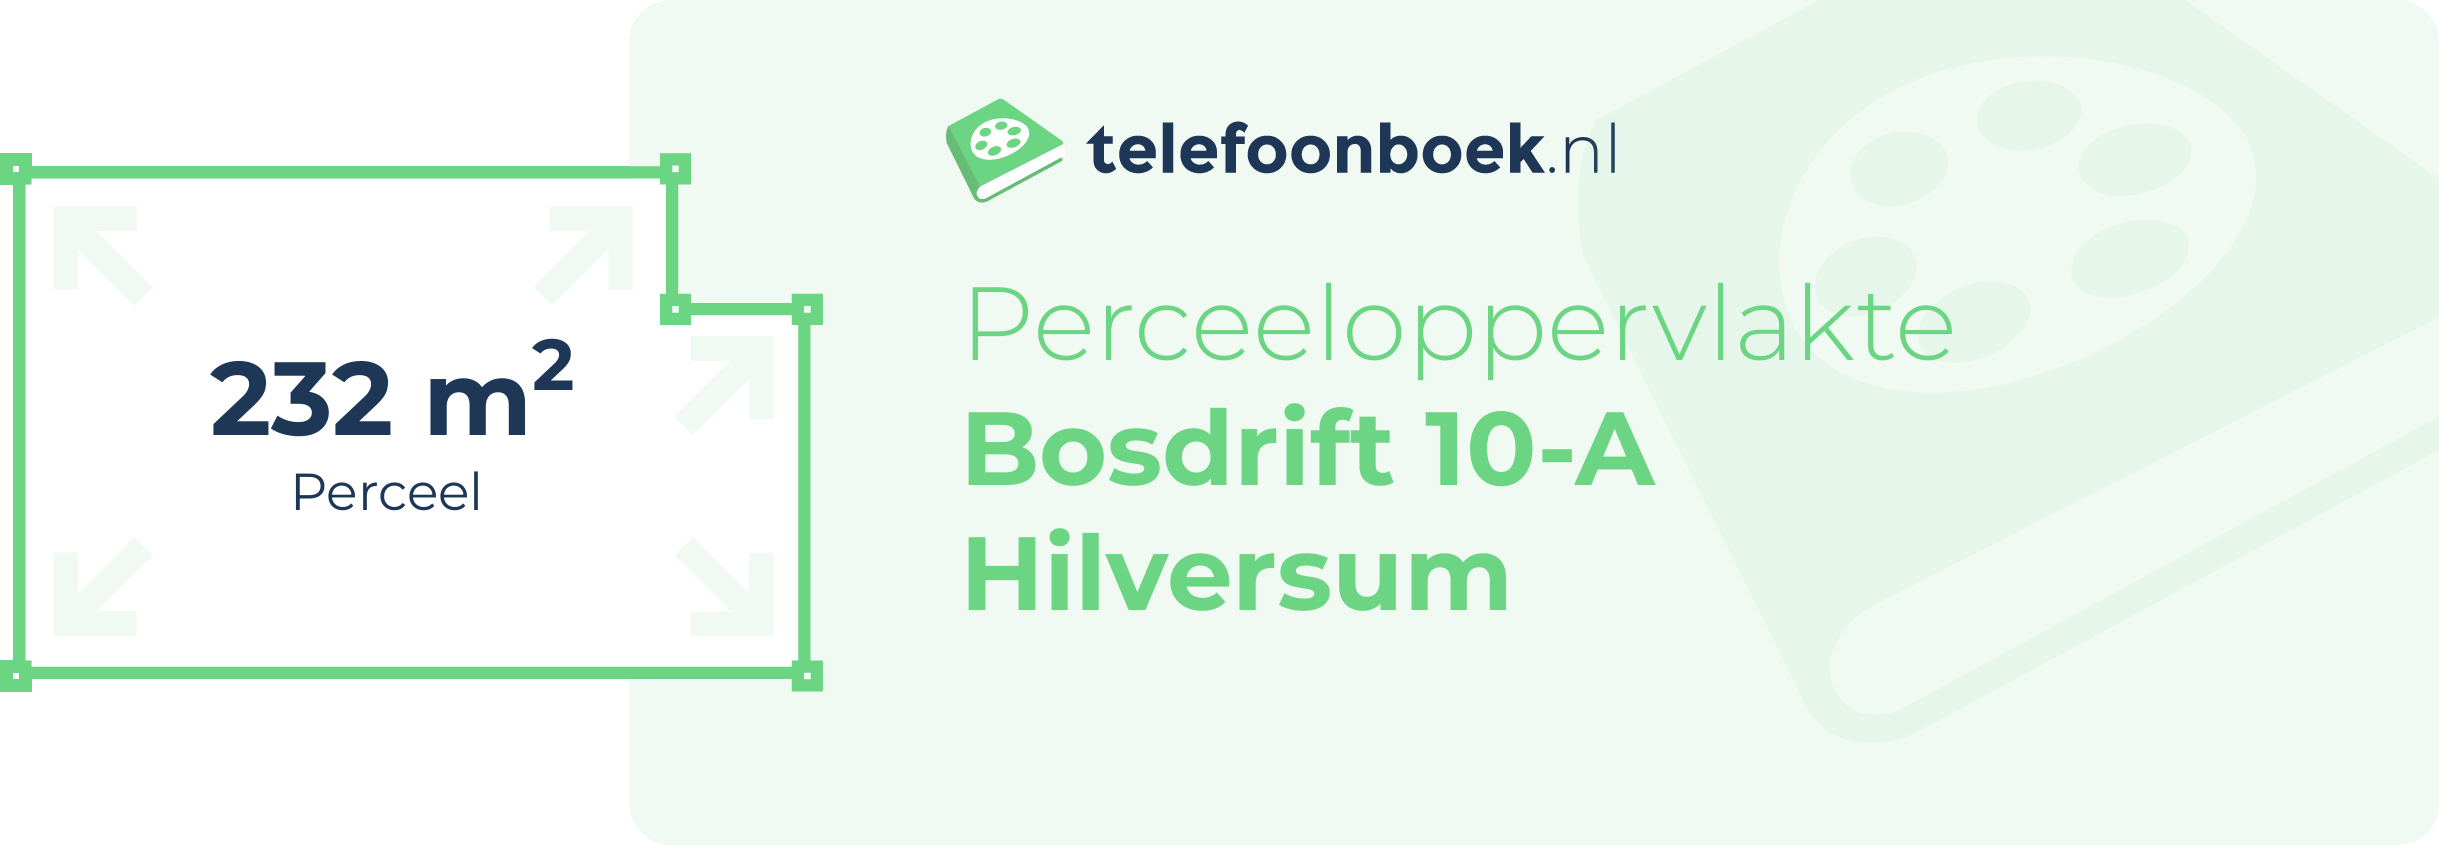 Perceeloppervlakte Bosdrift 10-A Hilversum